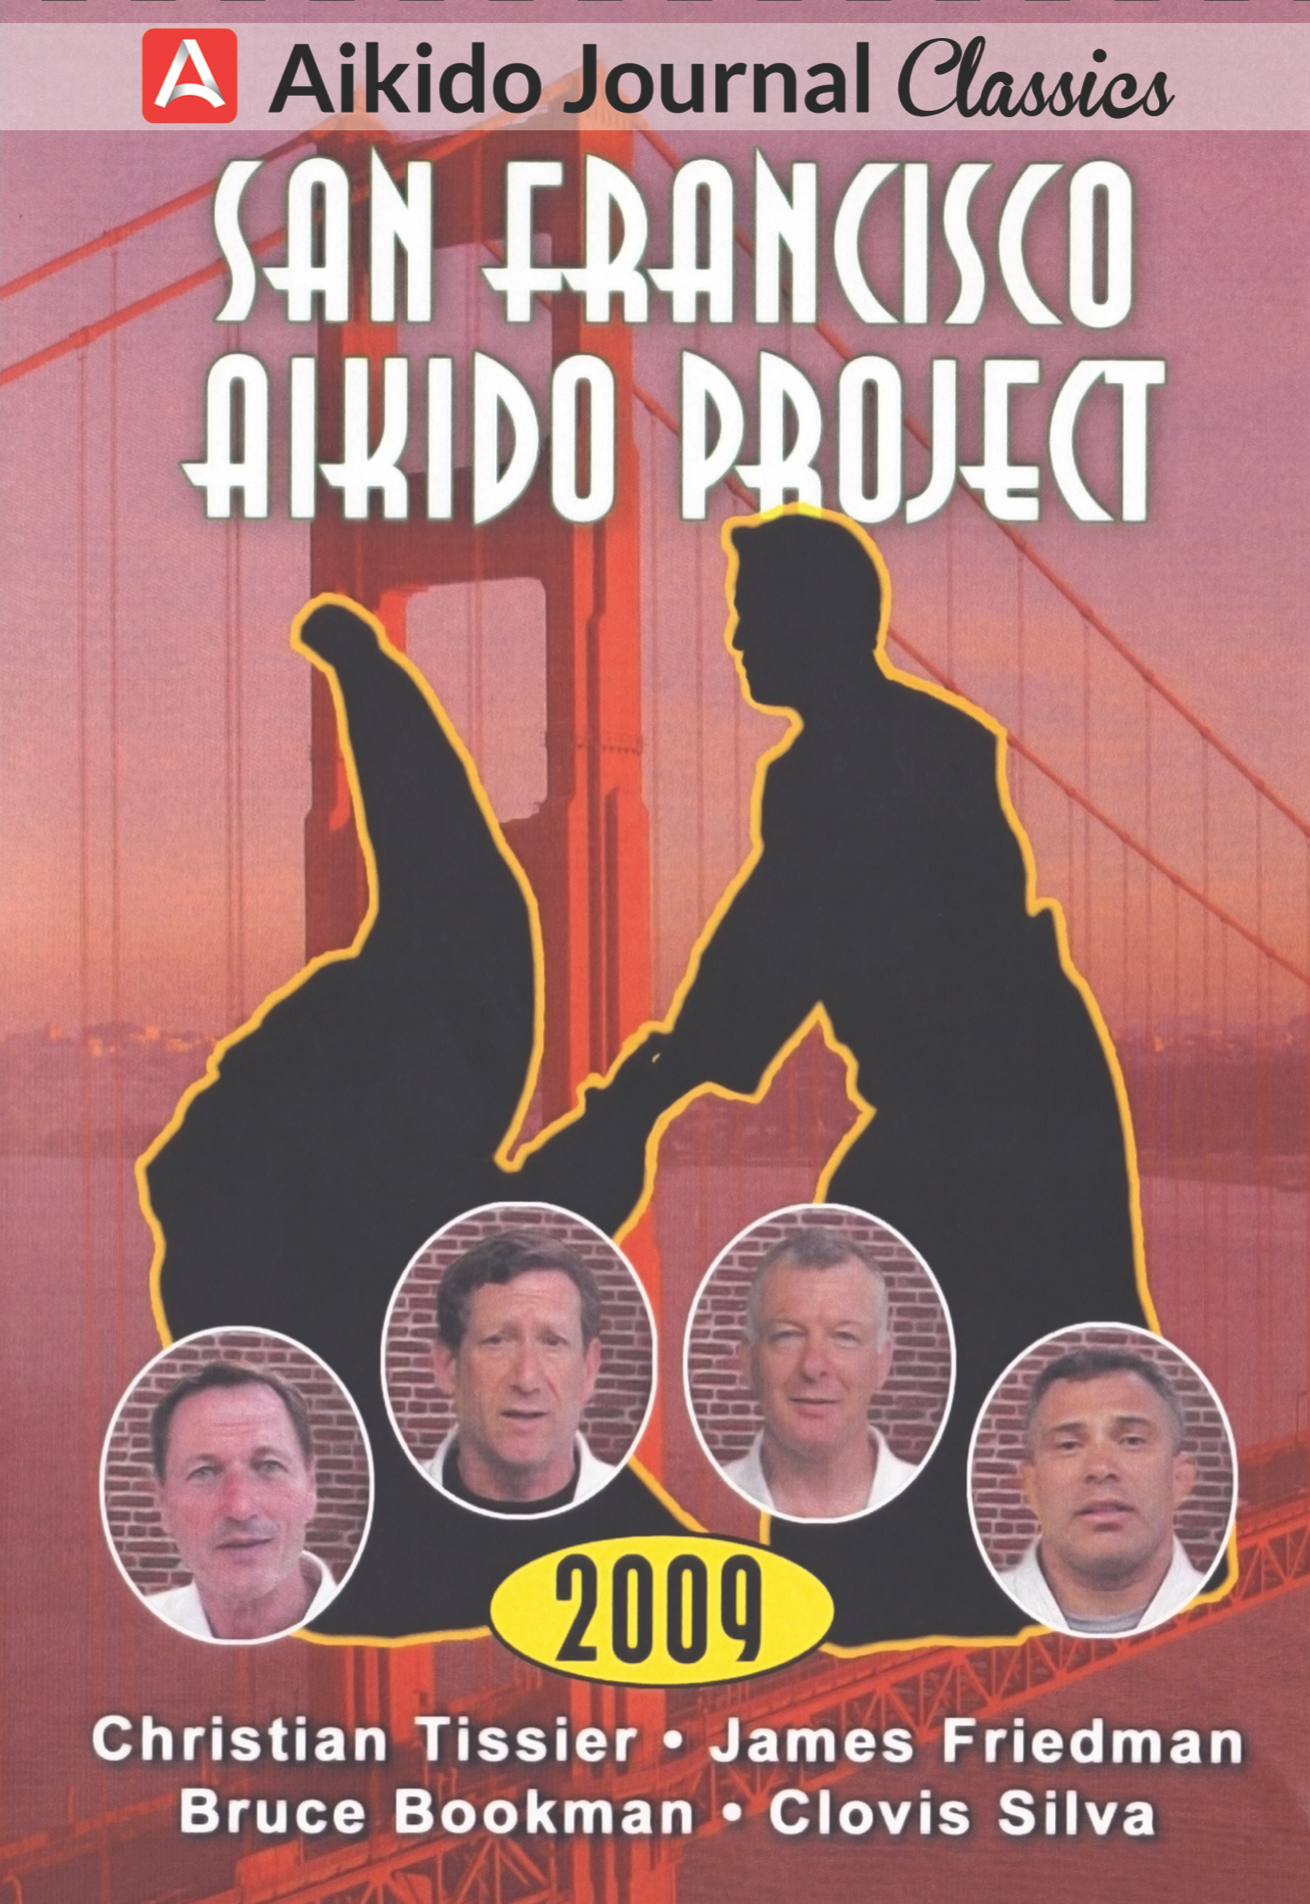 DVD del Proyecto Aikido de San Francisco (seminuevo) 